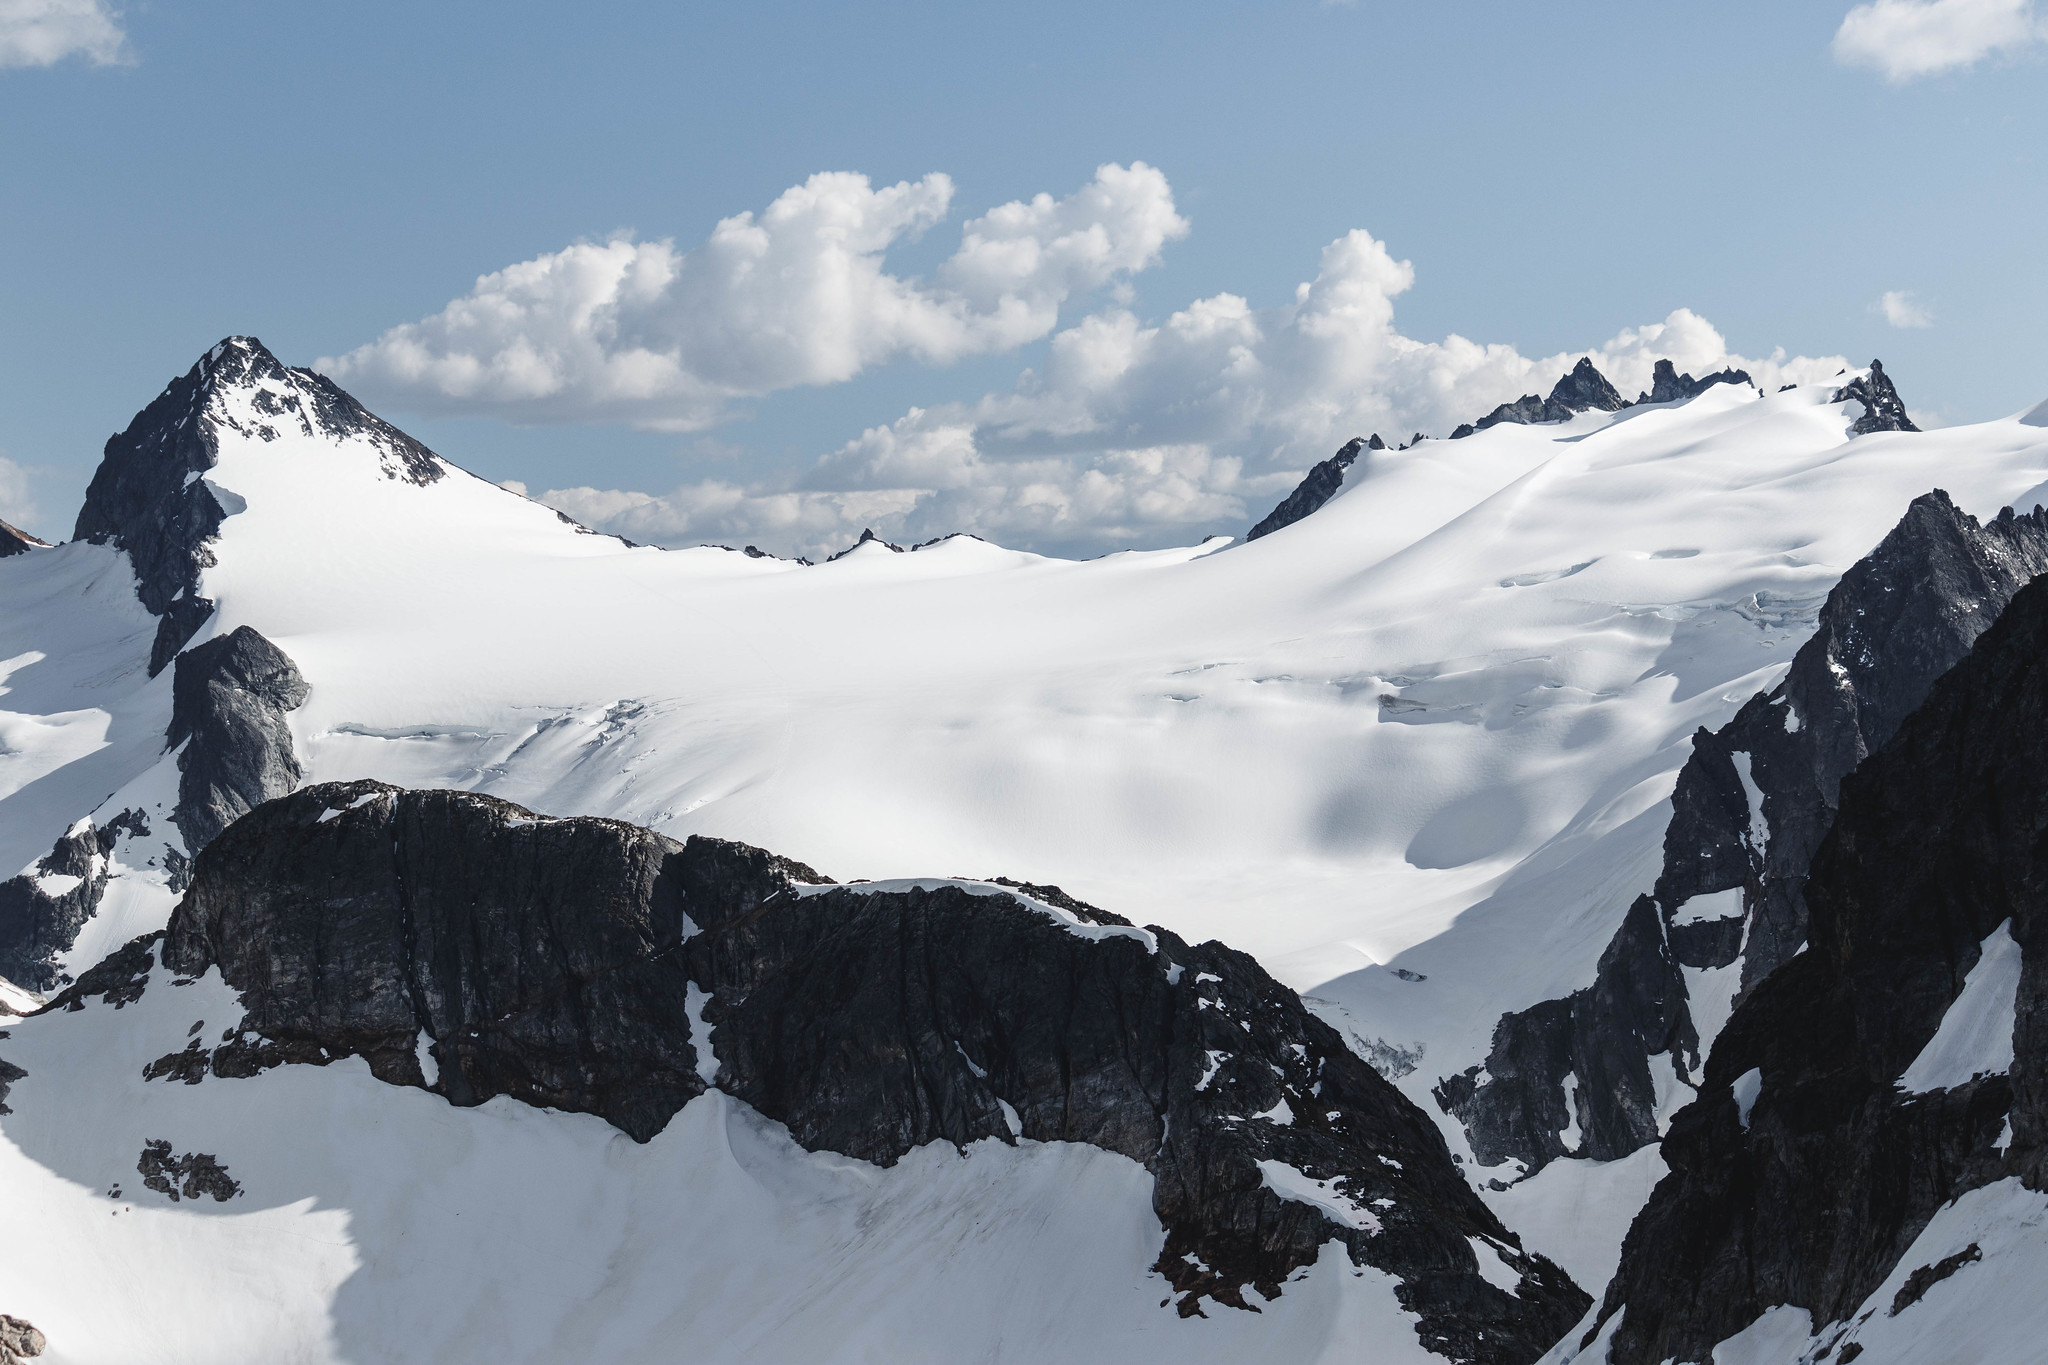 The expansive Neve Glacier